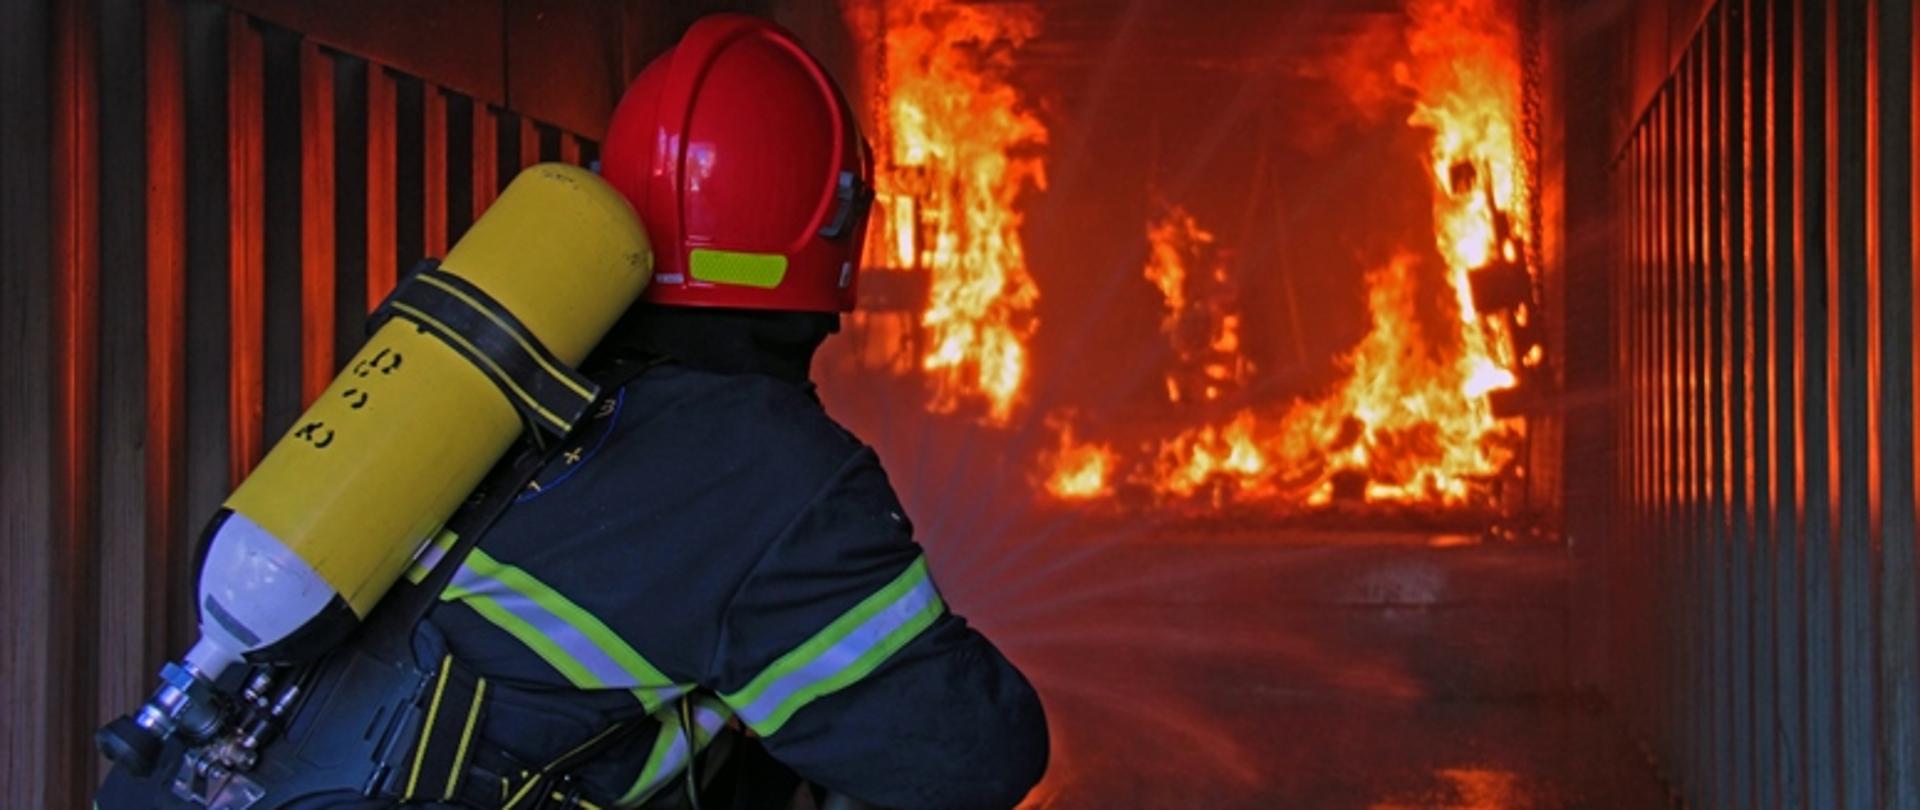 Strażak podczas ćwiczeń w kabinie z ogniem gasi go